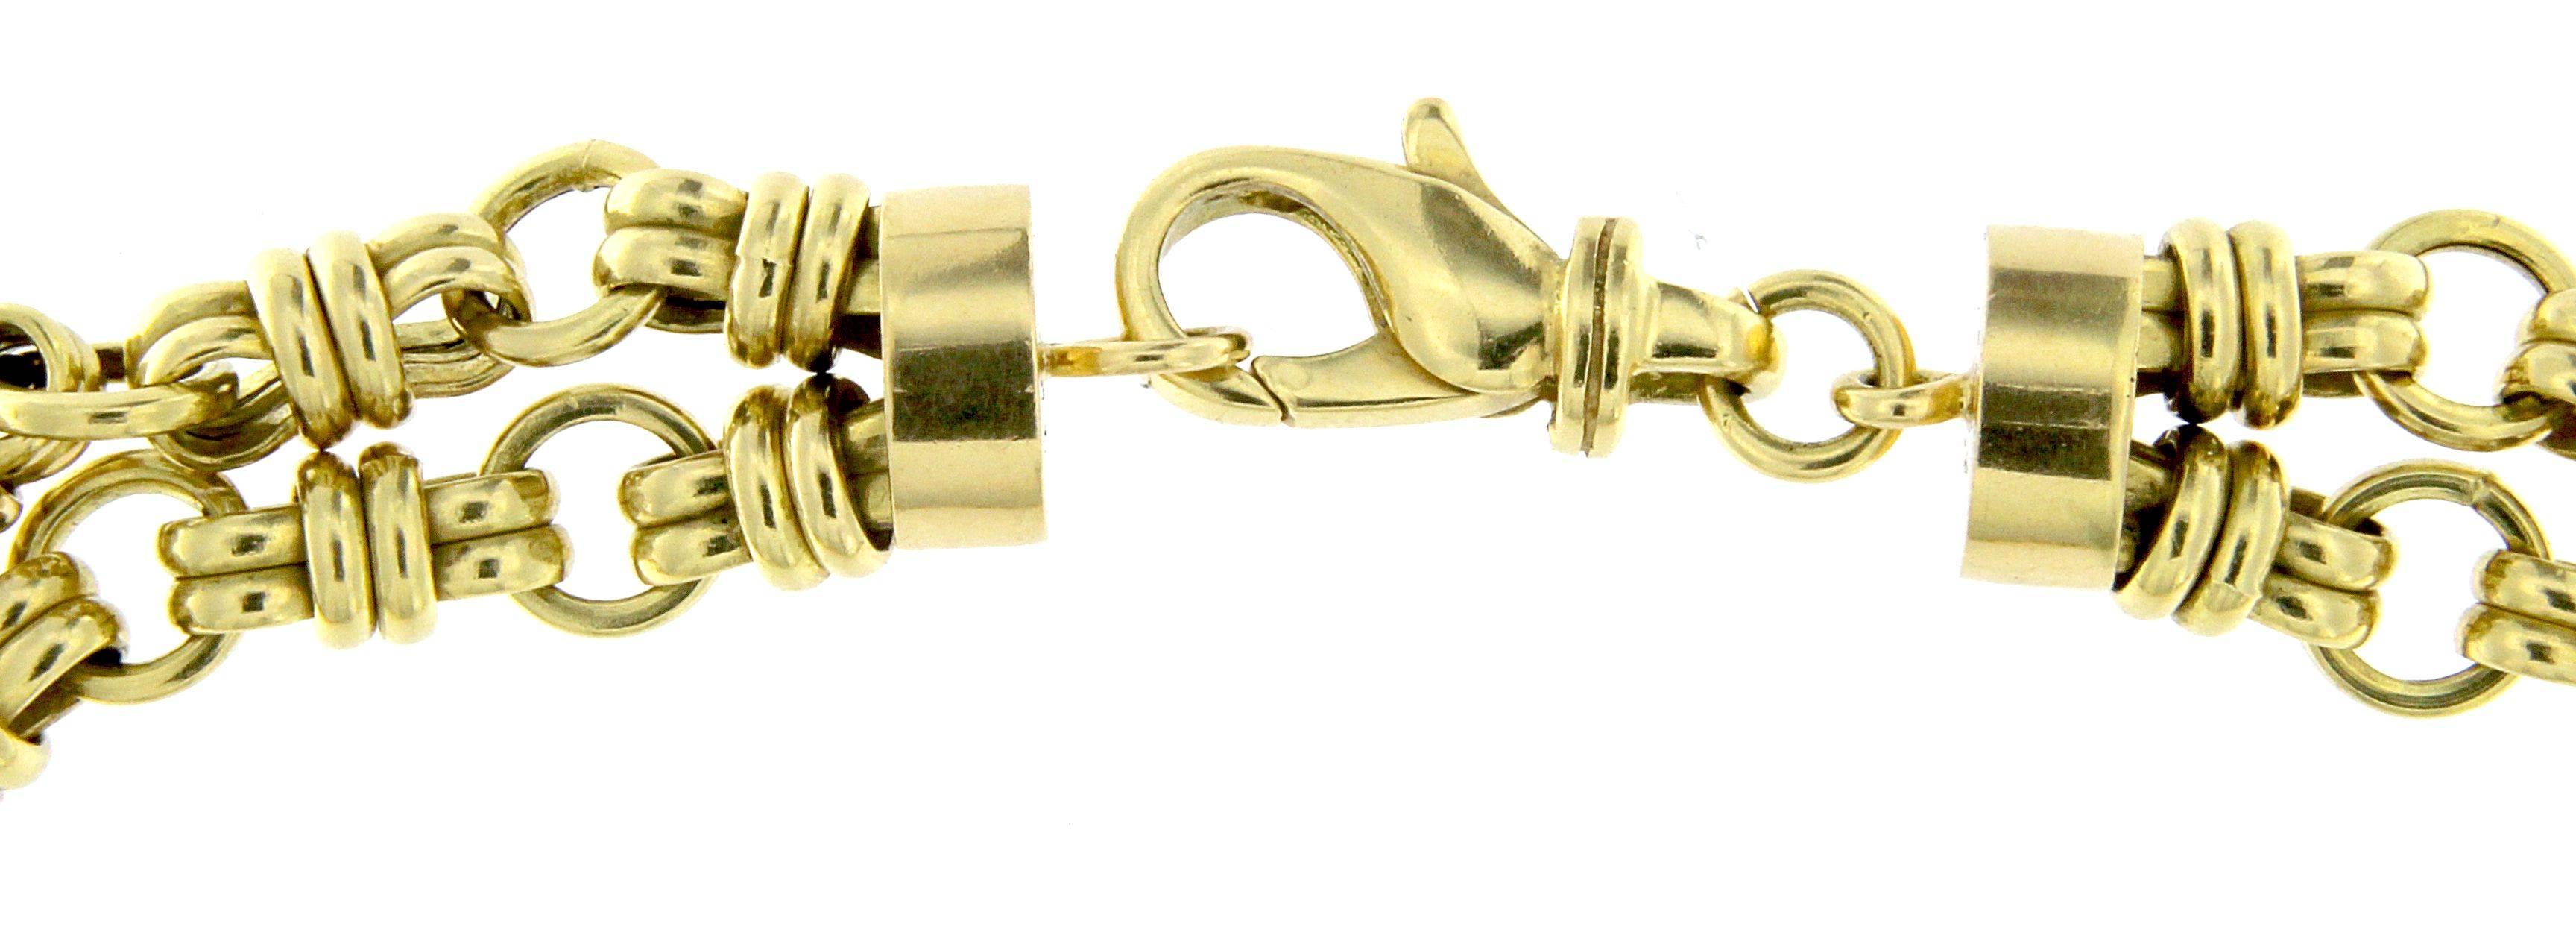 Sehr ländlich, ein wenig lebhaft und fröhlich ist diese zweisträngige Halskette aus 18 kt Gold Anhängern
Jeder einzelne Stiefel wurde von Hand entworfen und geformt
Gesamtgewicht des Goldes gr 130,90
stamp750